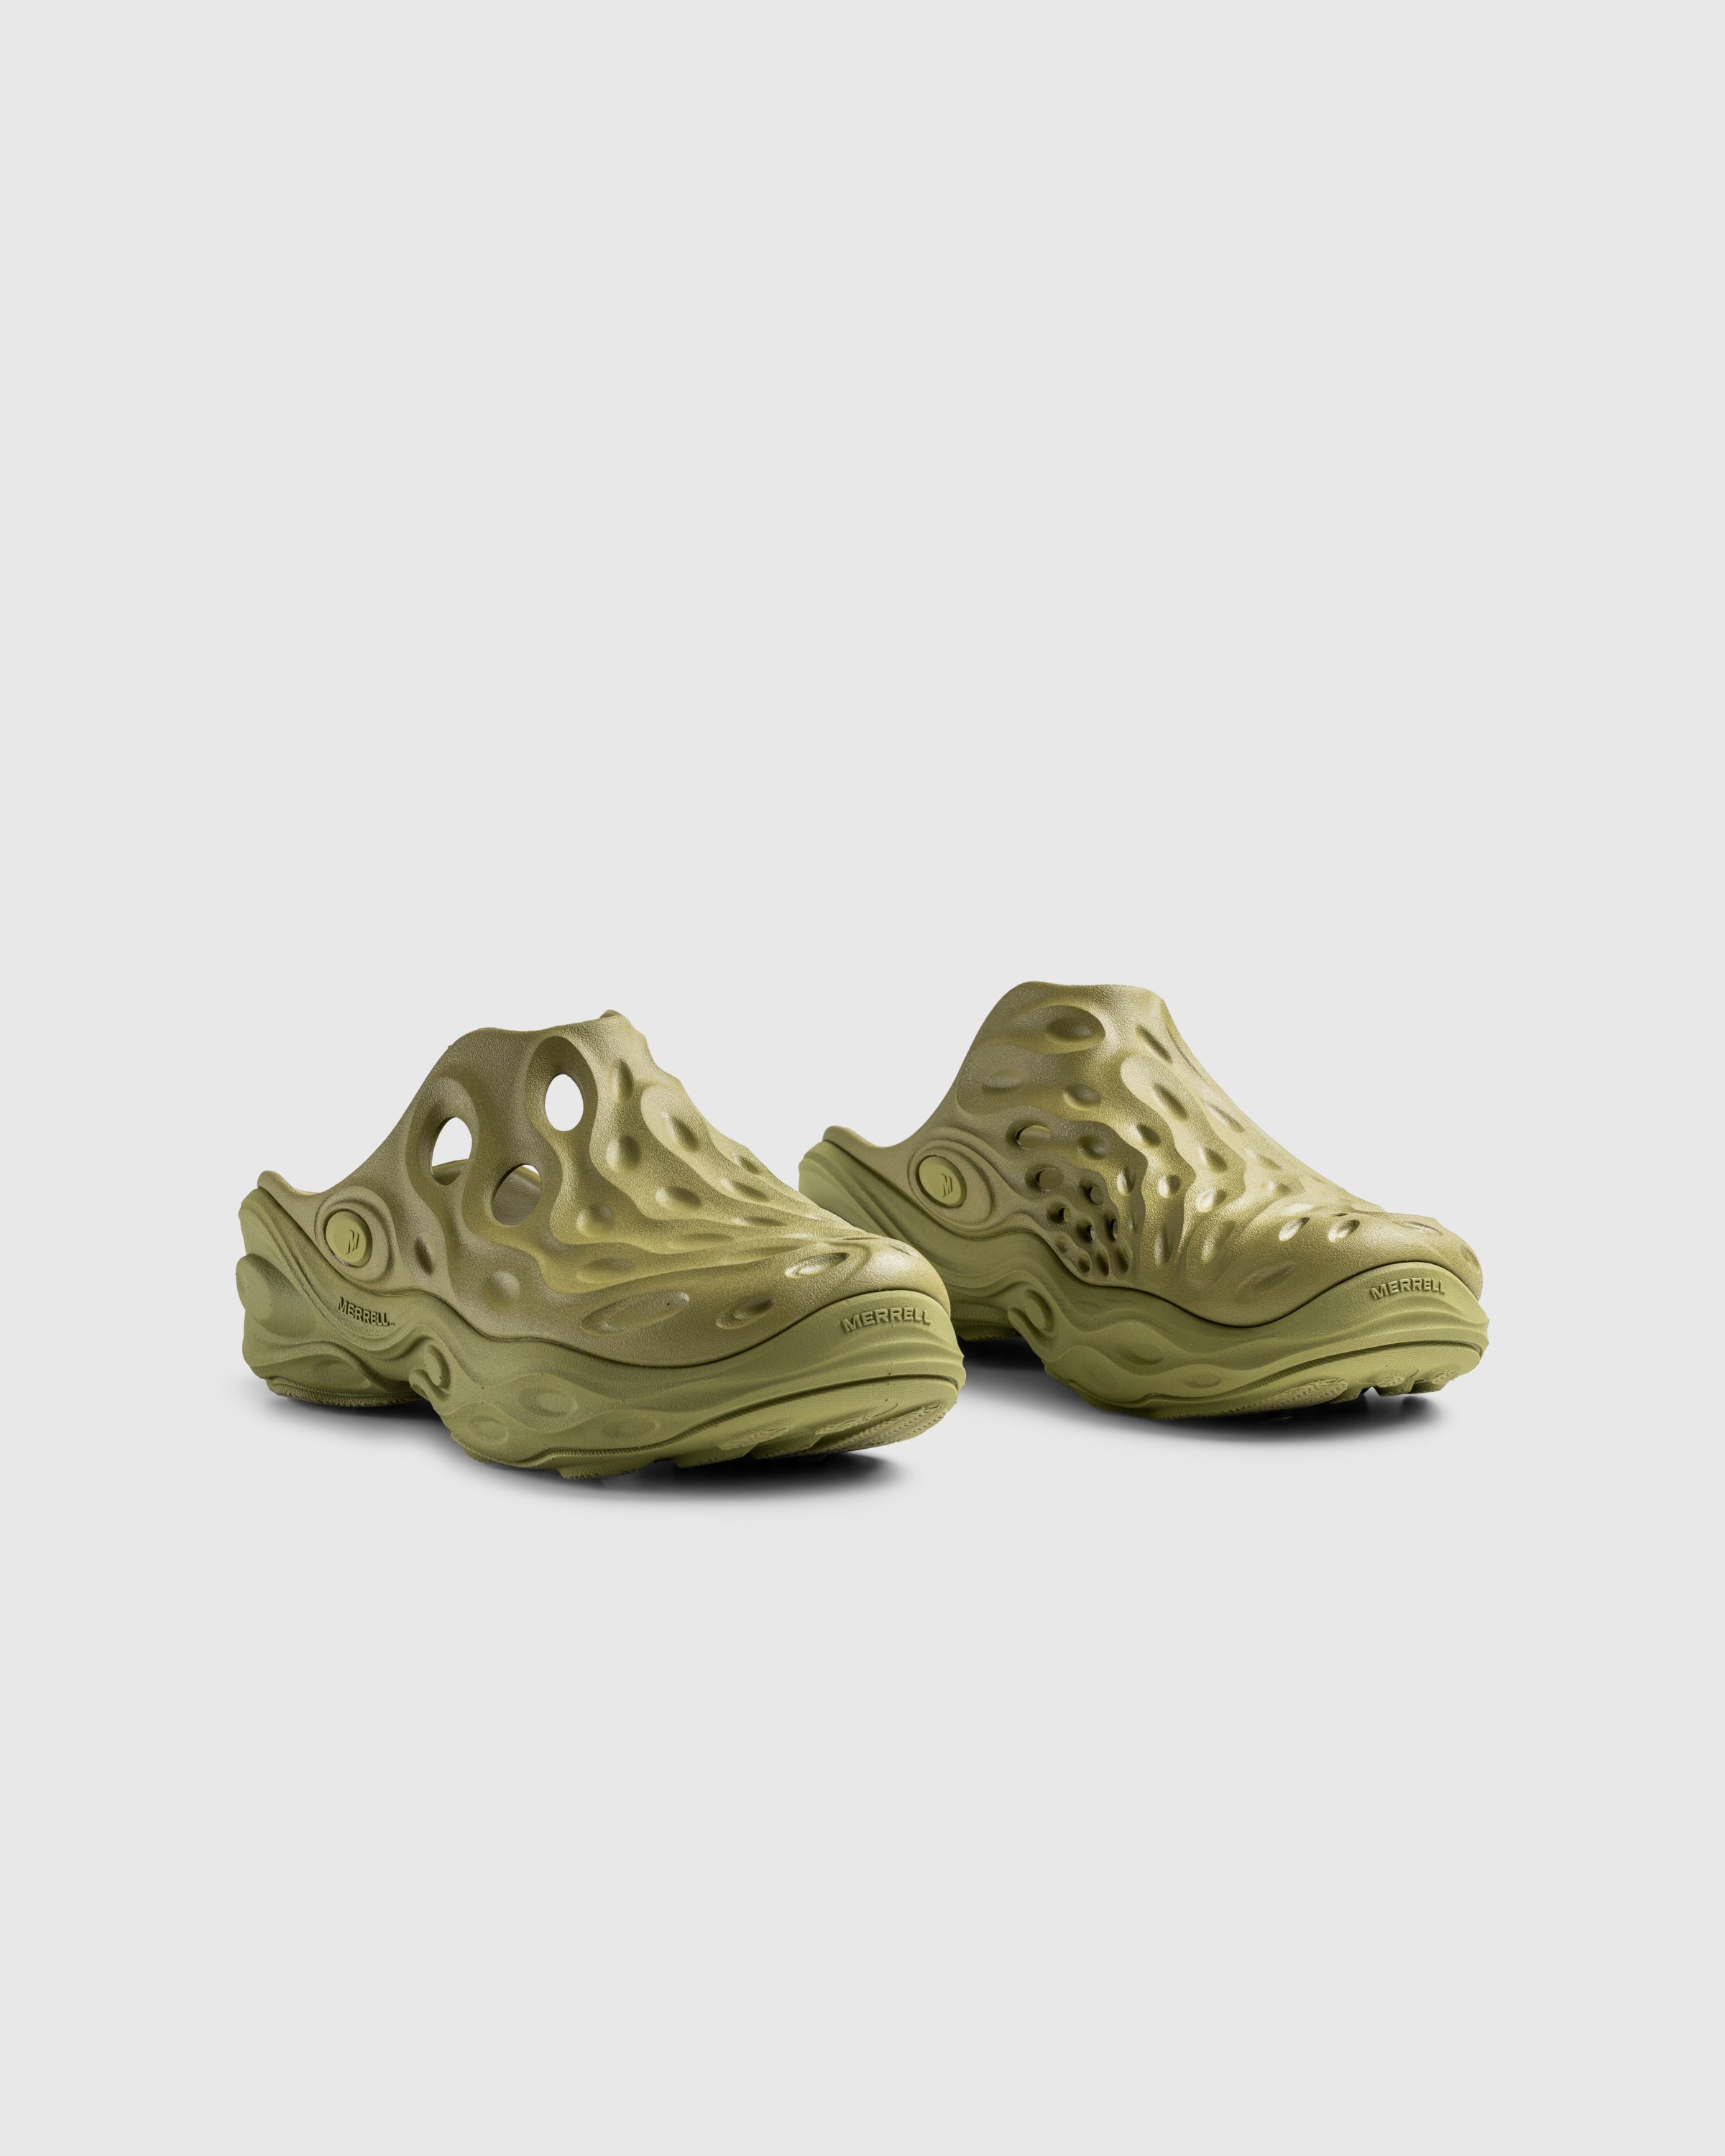 Merrell - HYDRO NEXT GEN MULE SE/TRIPLE MOSSTONE - Footwear - Green - Image 3